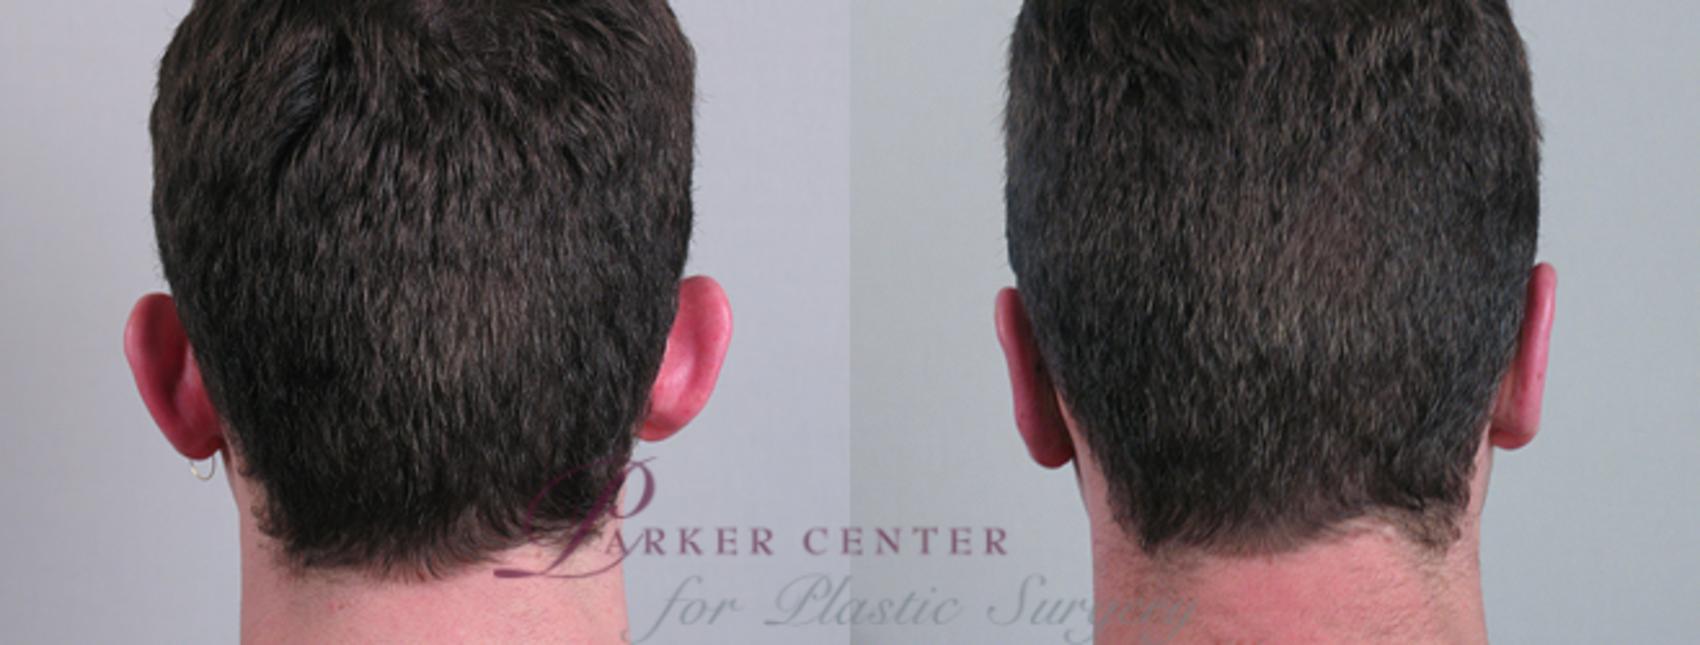 Ear Surgery Case 236 Before & After View #1 | Paramus, NJ | Parker Center for Plastic Surgery